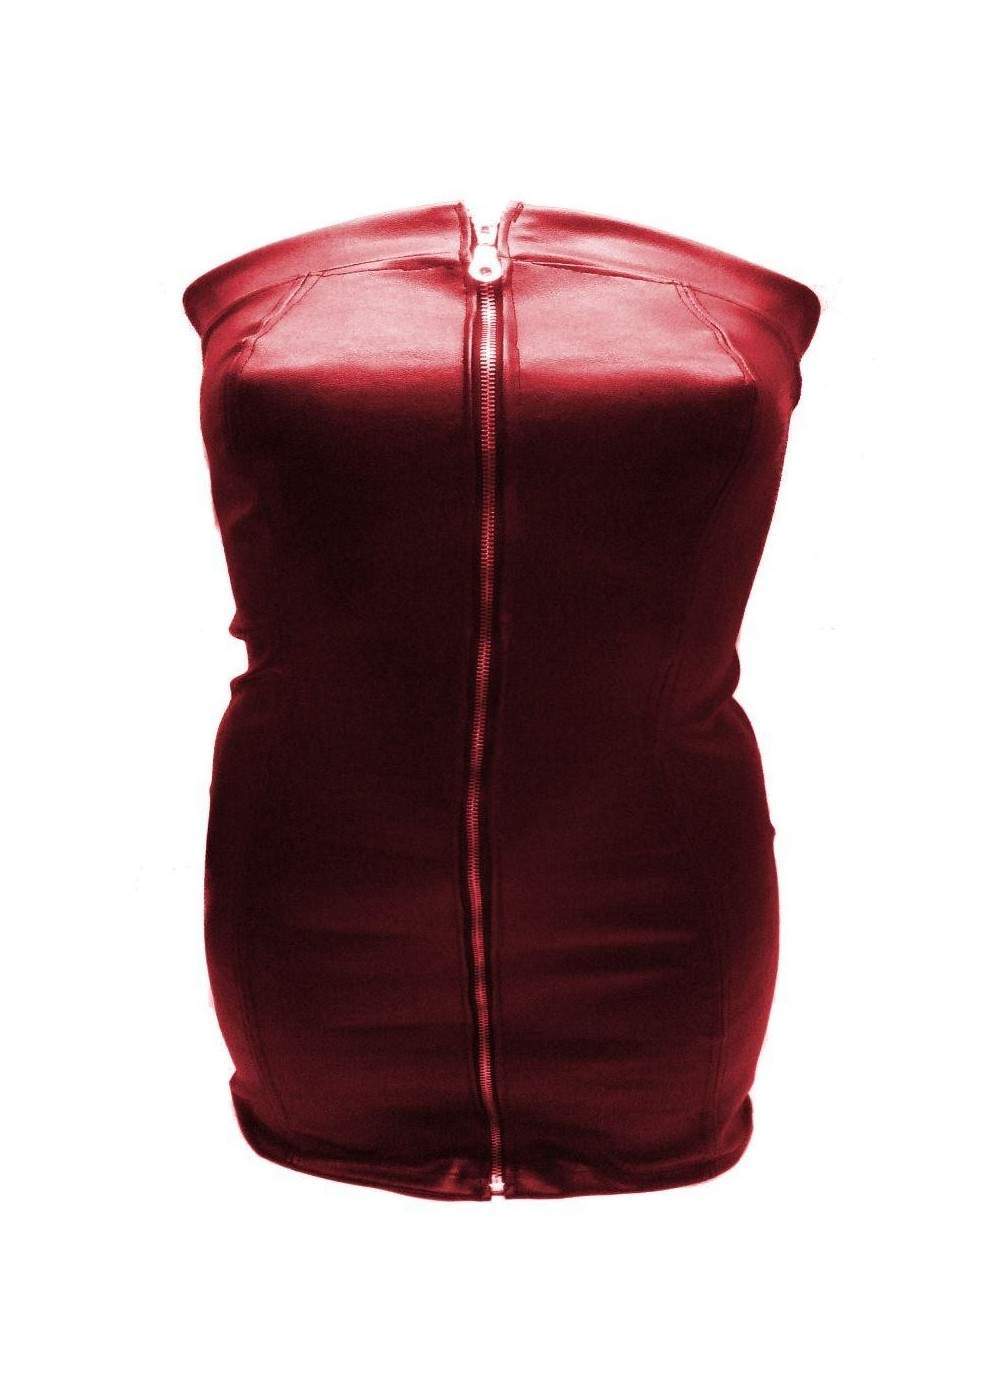 Softes Designer Leder Kleid rot Größe L - XXL (44 - 52) ab 35,00 € - 